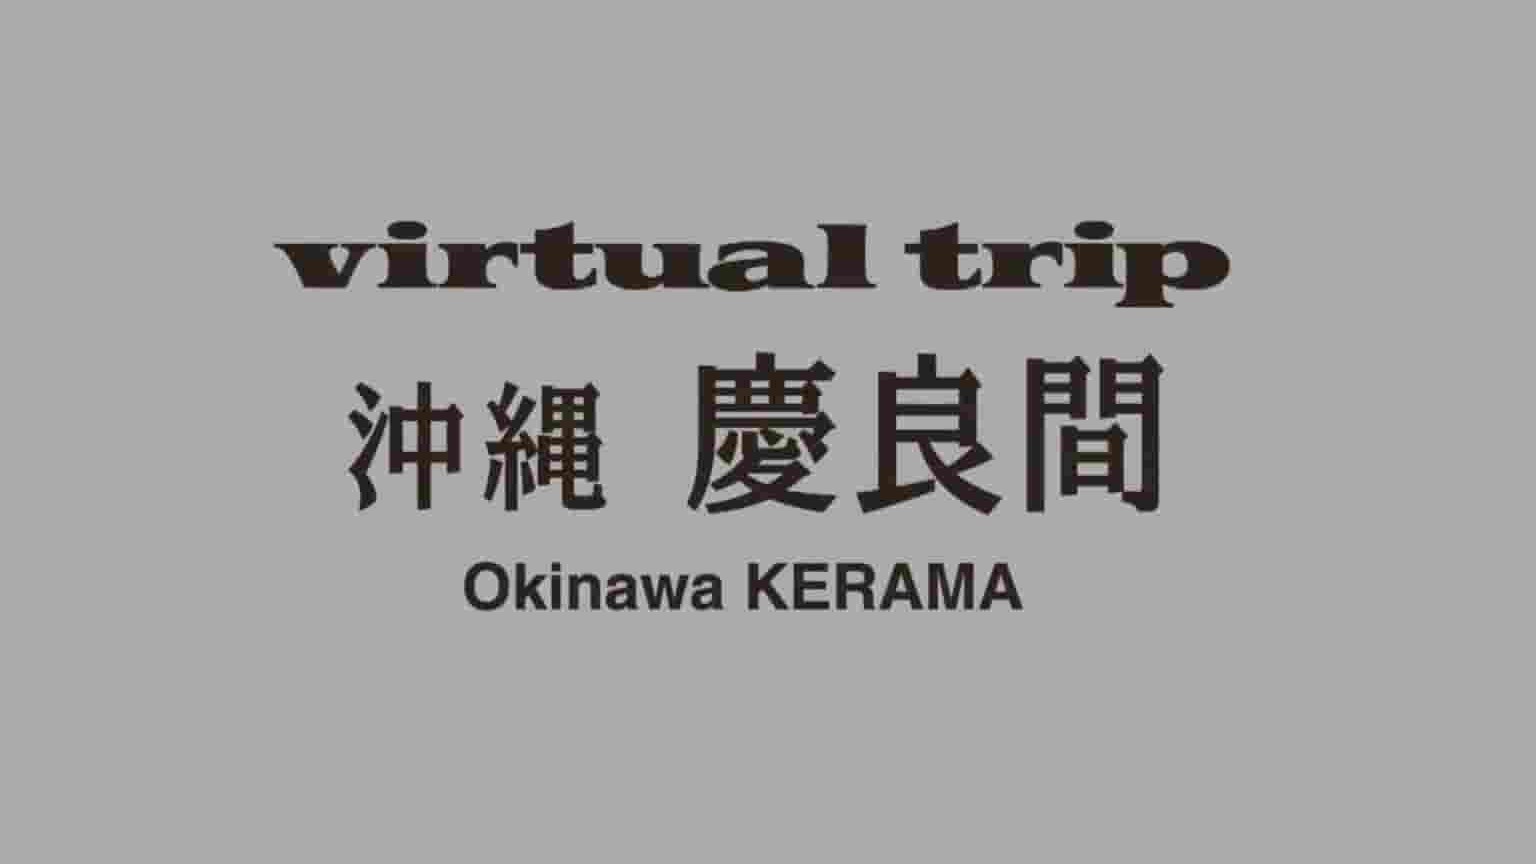 日本纪录片《实境之旅:冲绳 庆良间 Virtual Trip Okiniwa Kerama》全1集 原版无字 1080P高清网盘下载